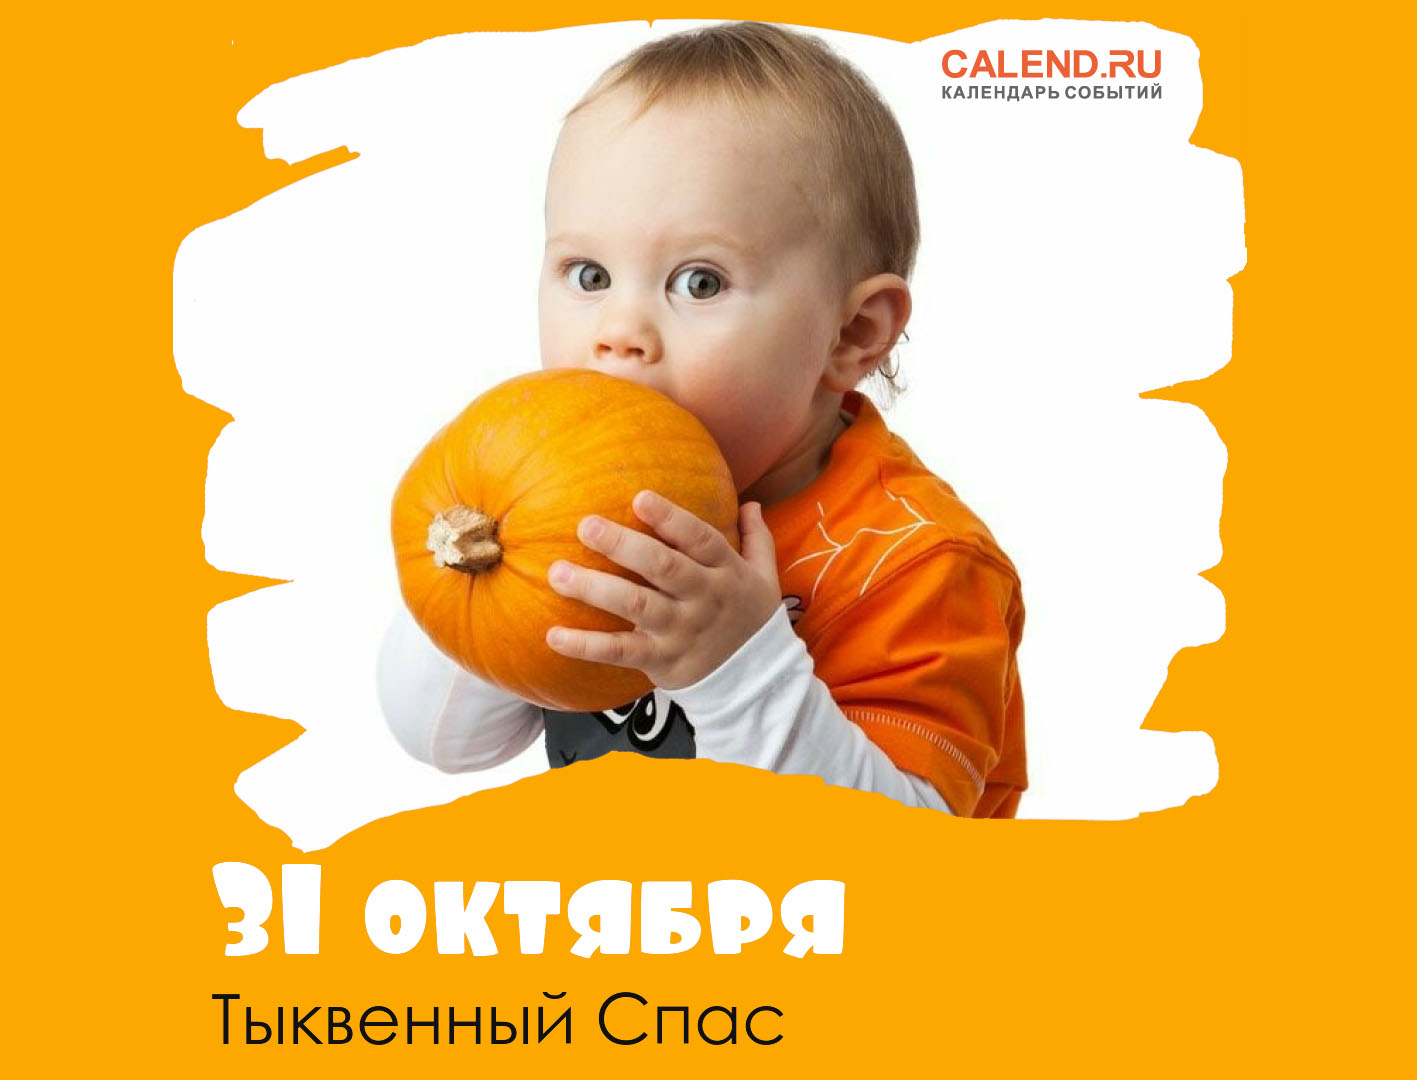 31 октября — Тыквенный Спас / Открытка дня / Журнал Calend.ru